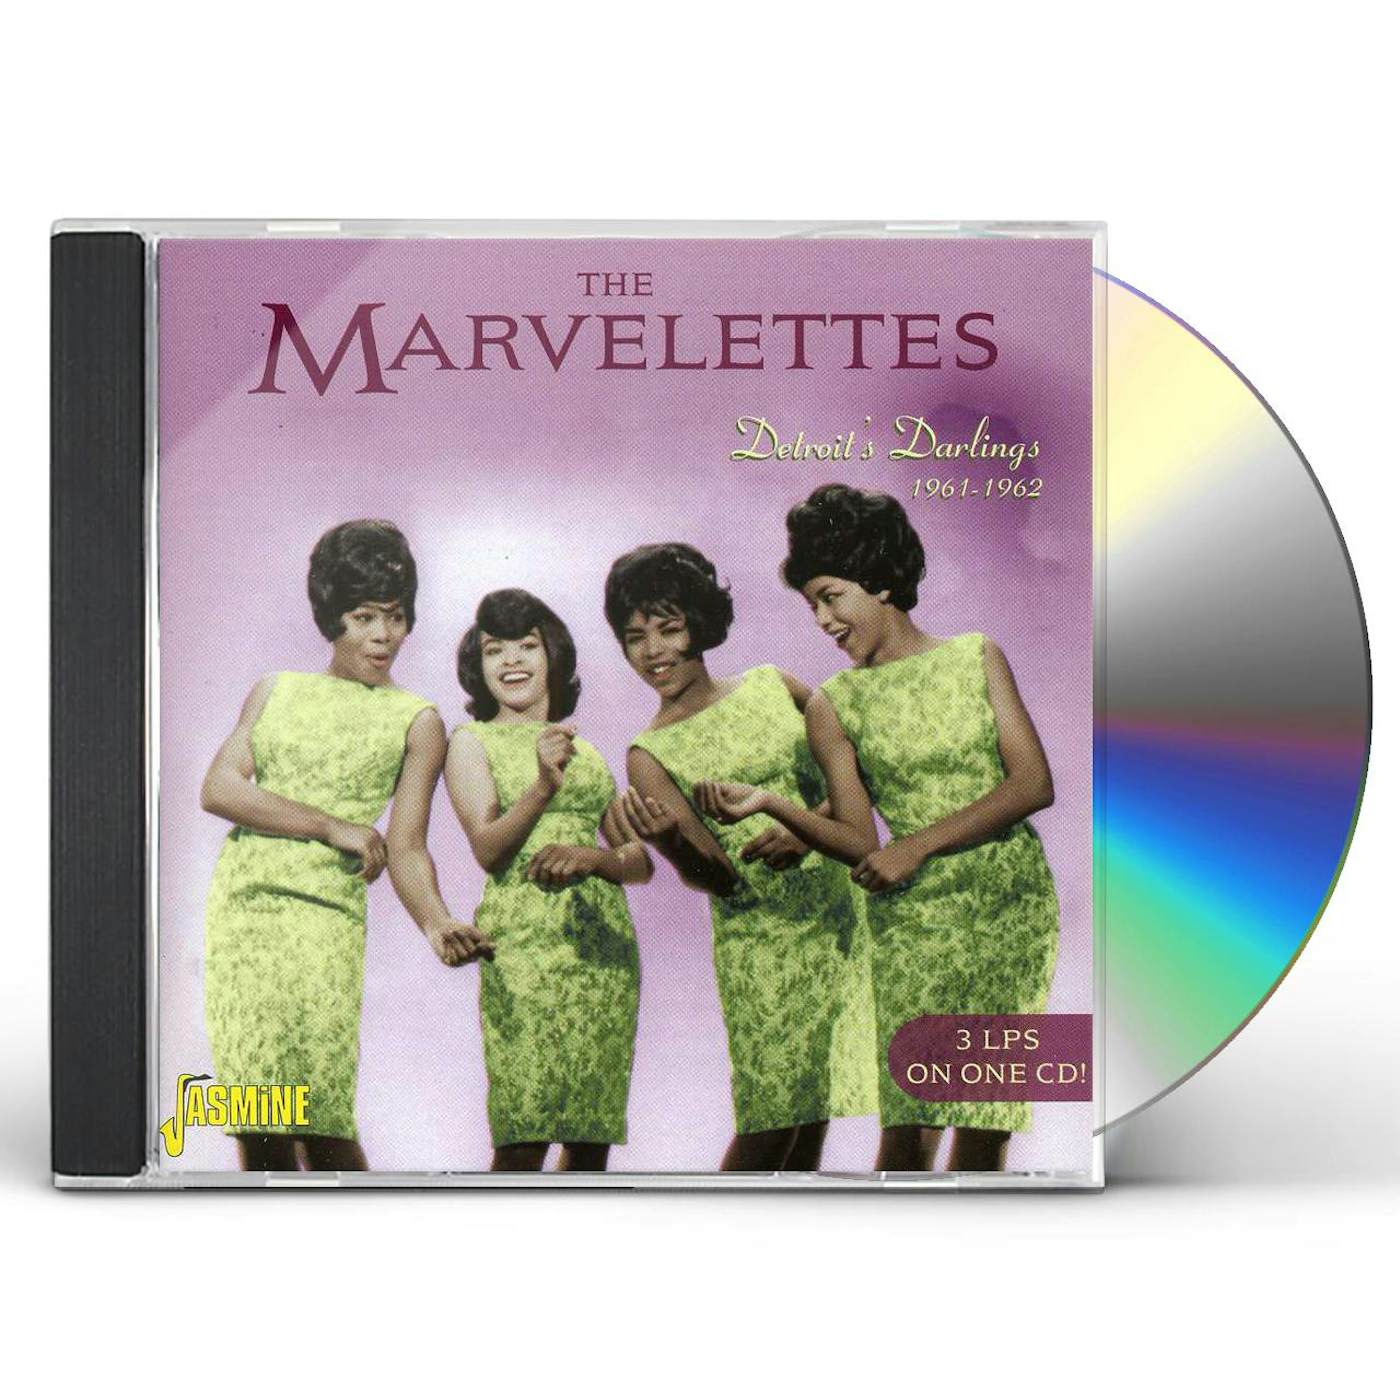 The Marvelettes DETROIT'S DARLINGS CD